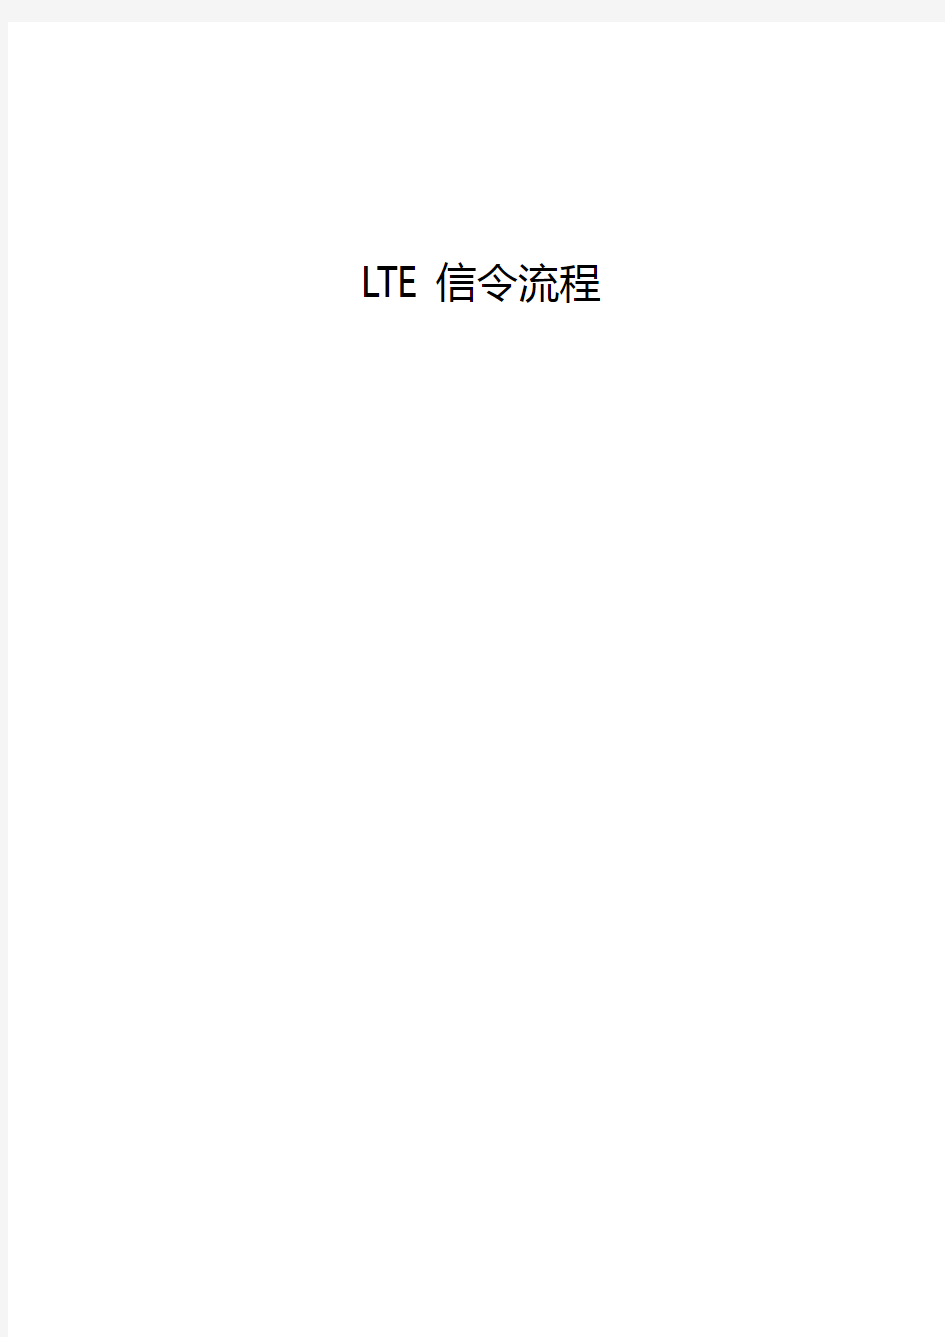 非常详细的LTE信令流程